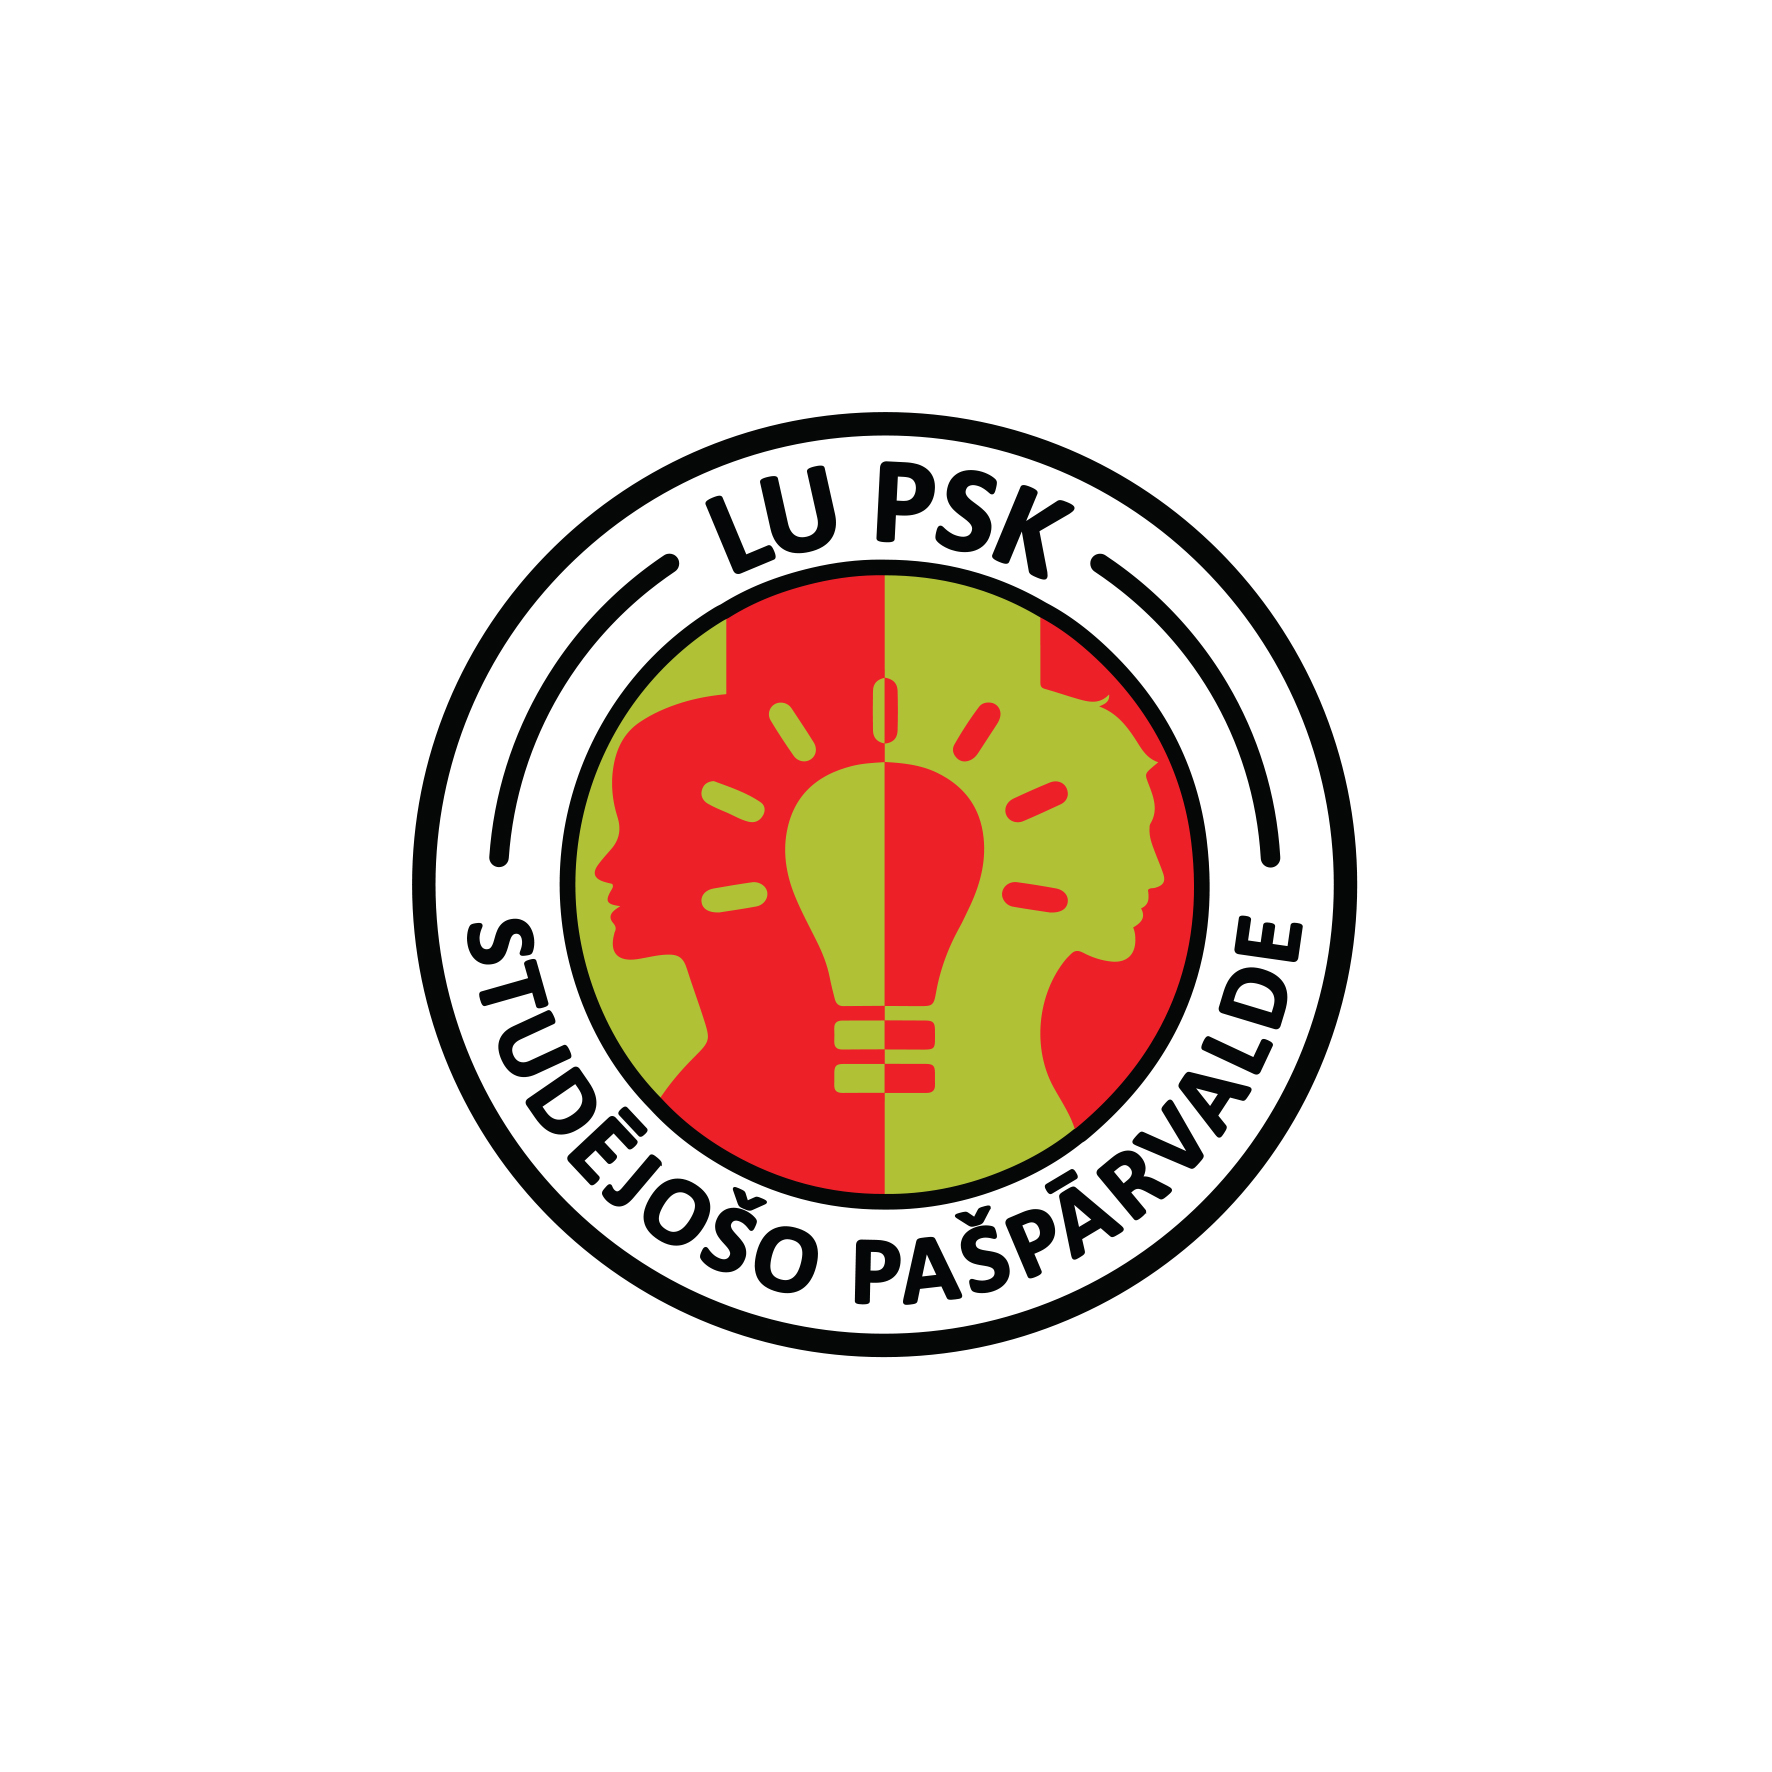 Studējošo pašpārvaldes logo